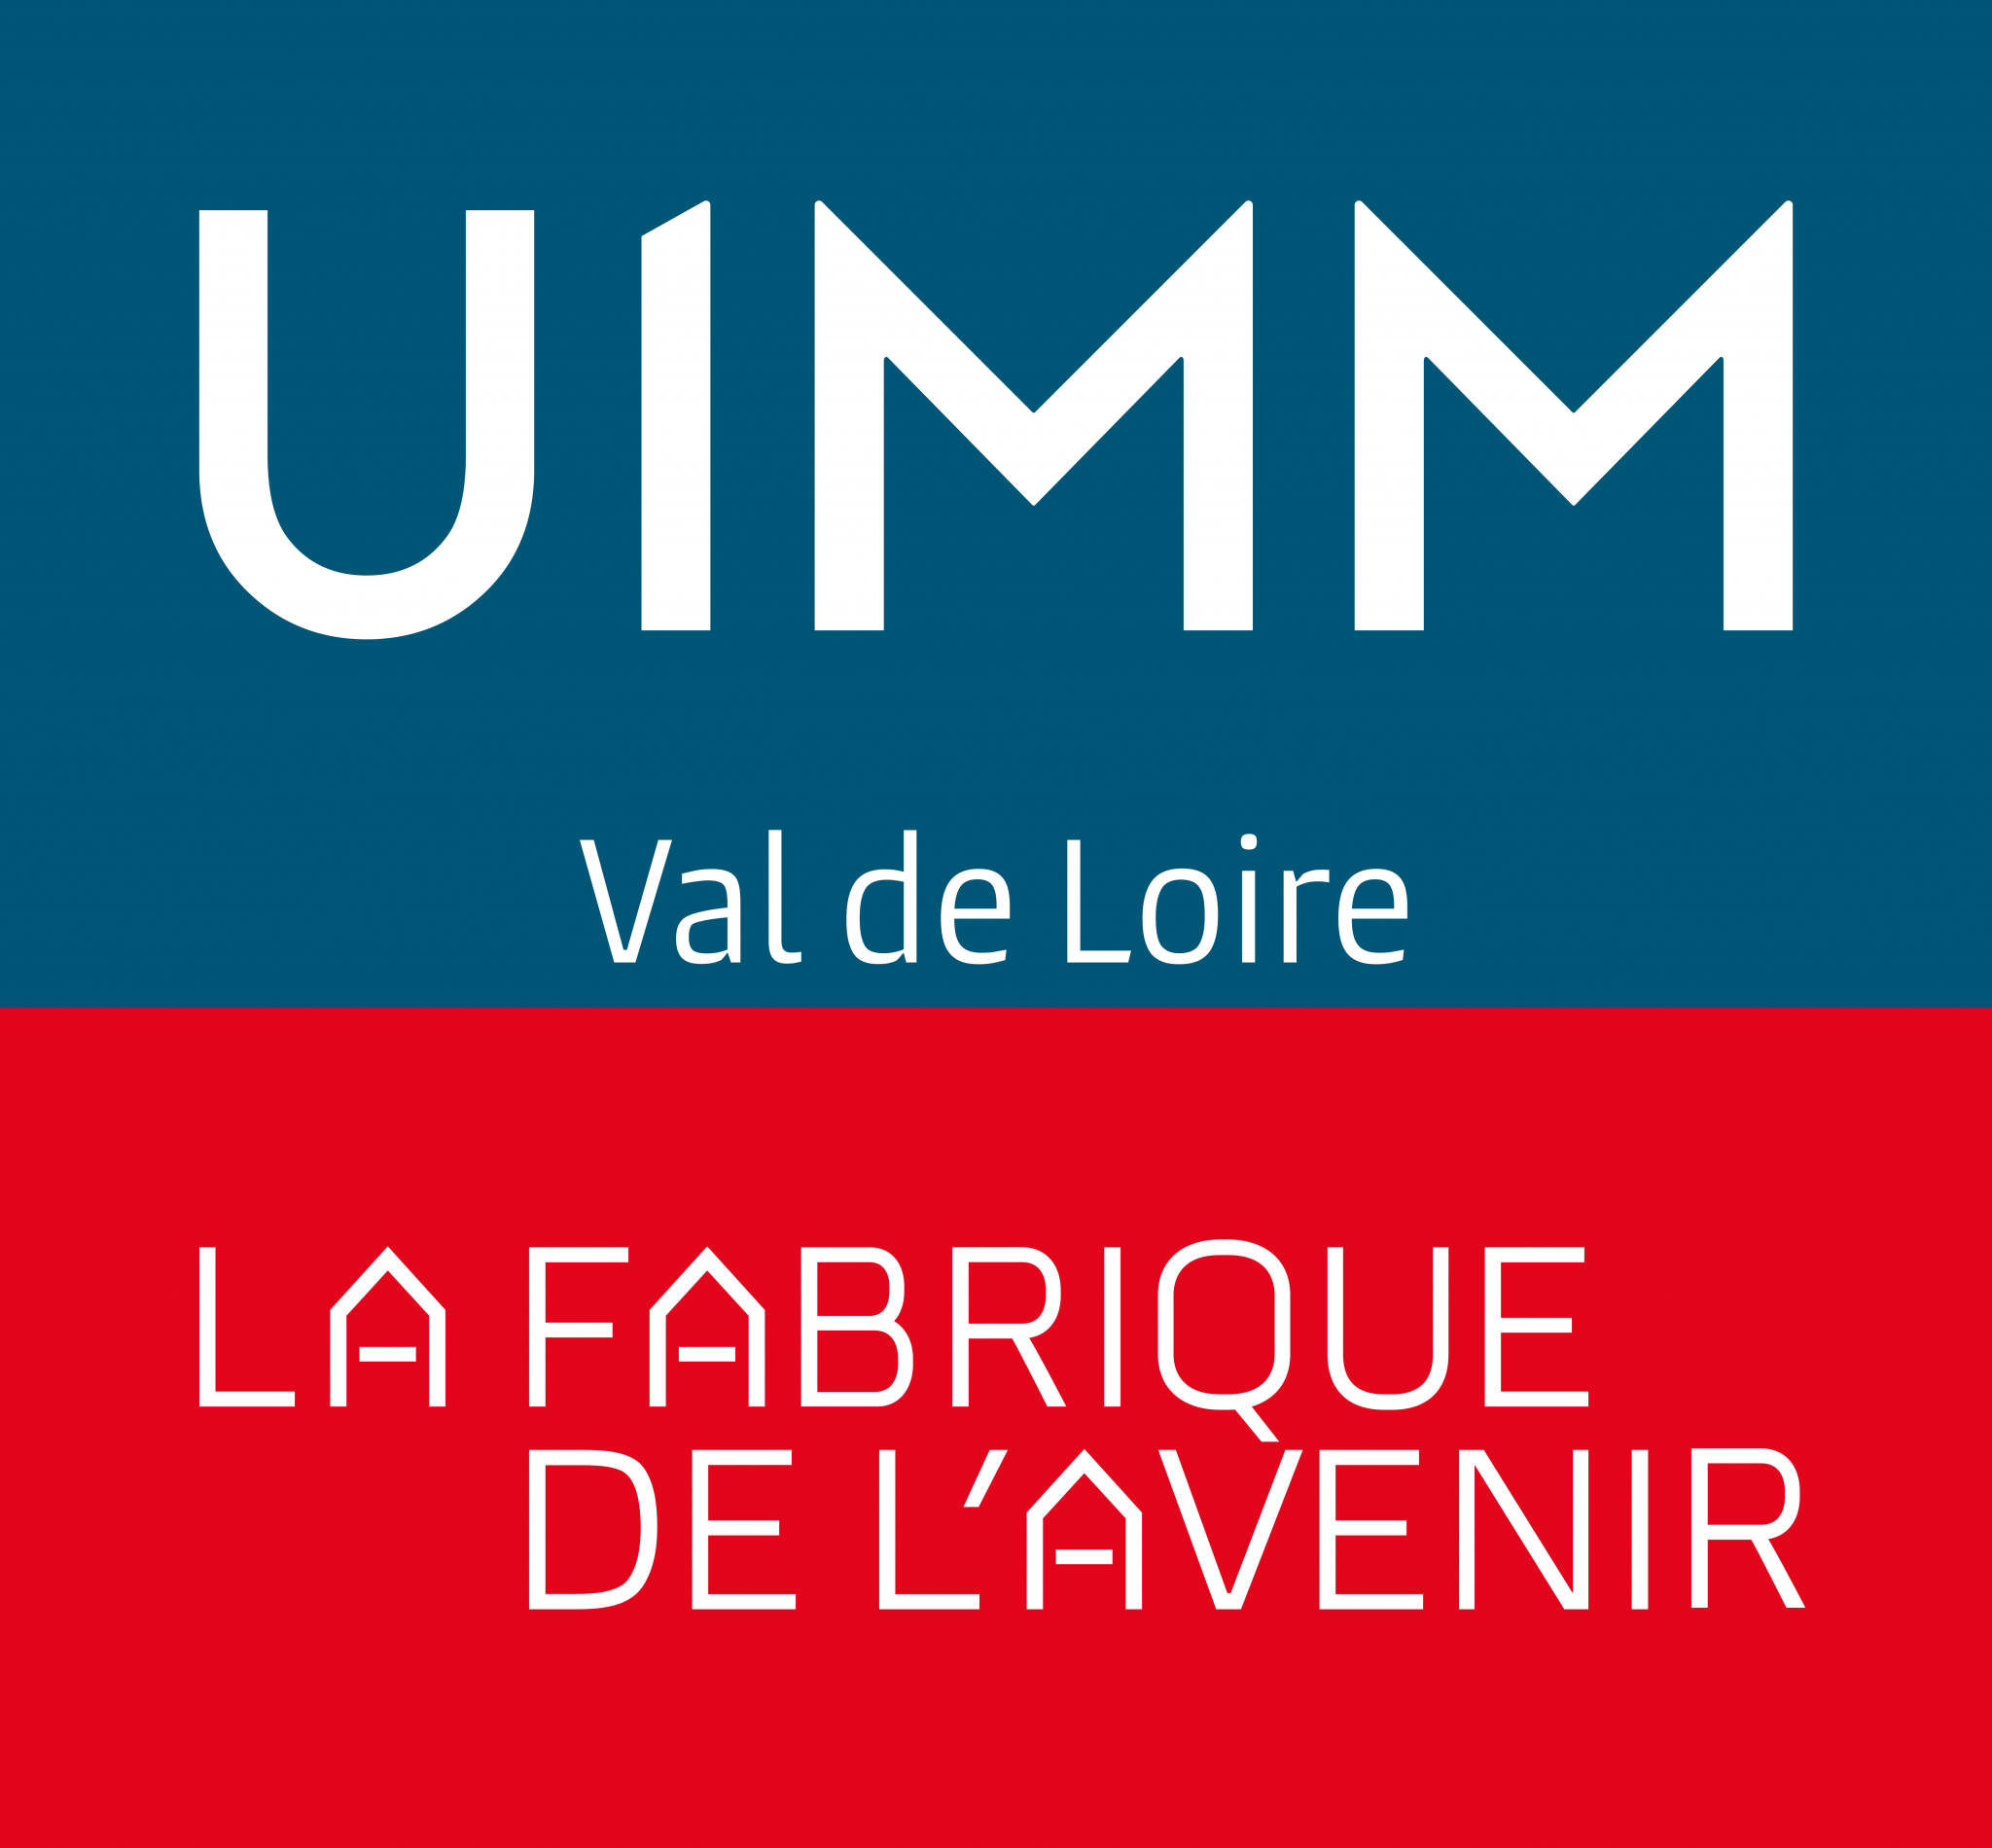 LOGO - UIMM-ValdeLoire-Rvb